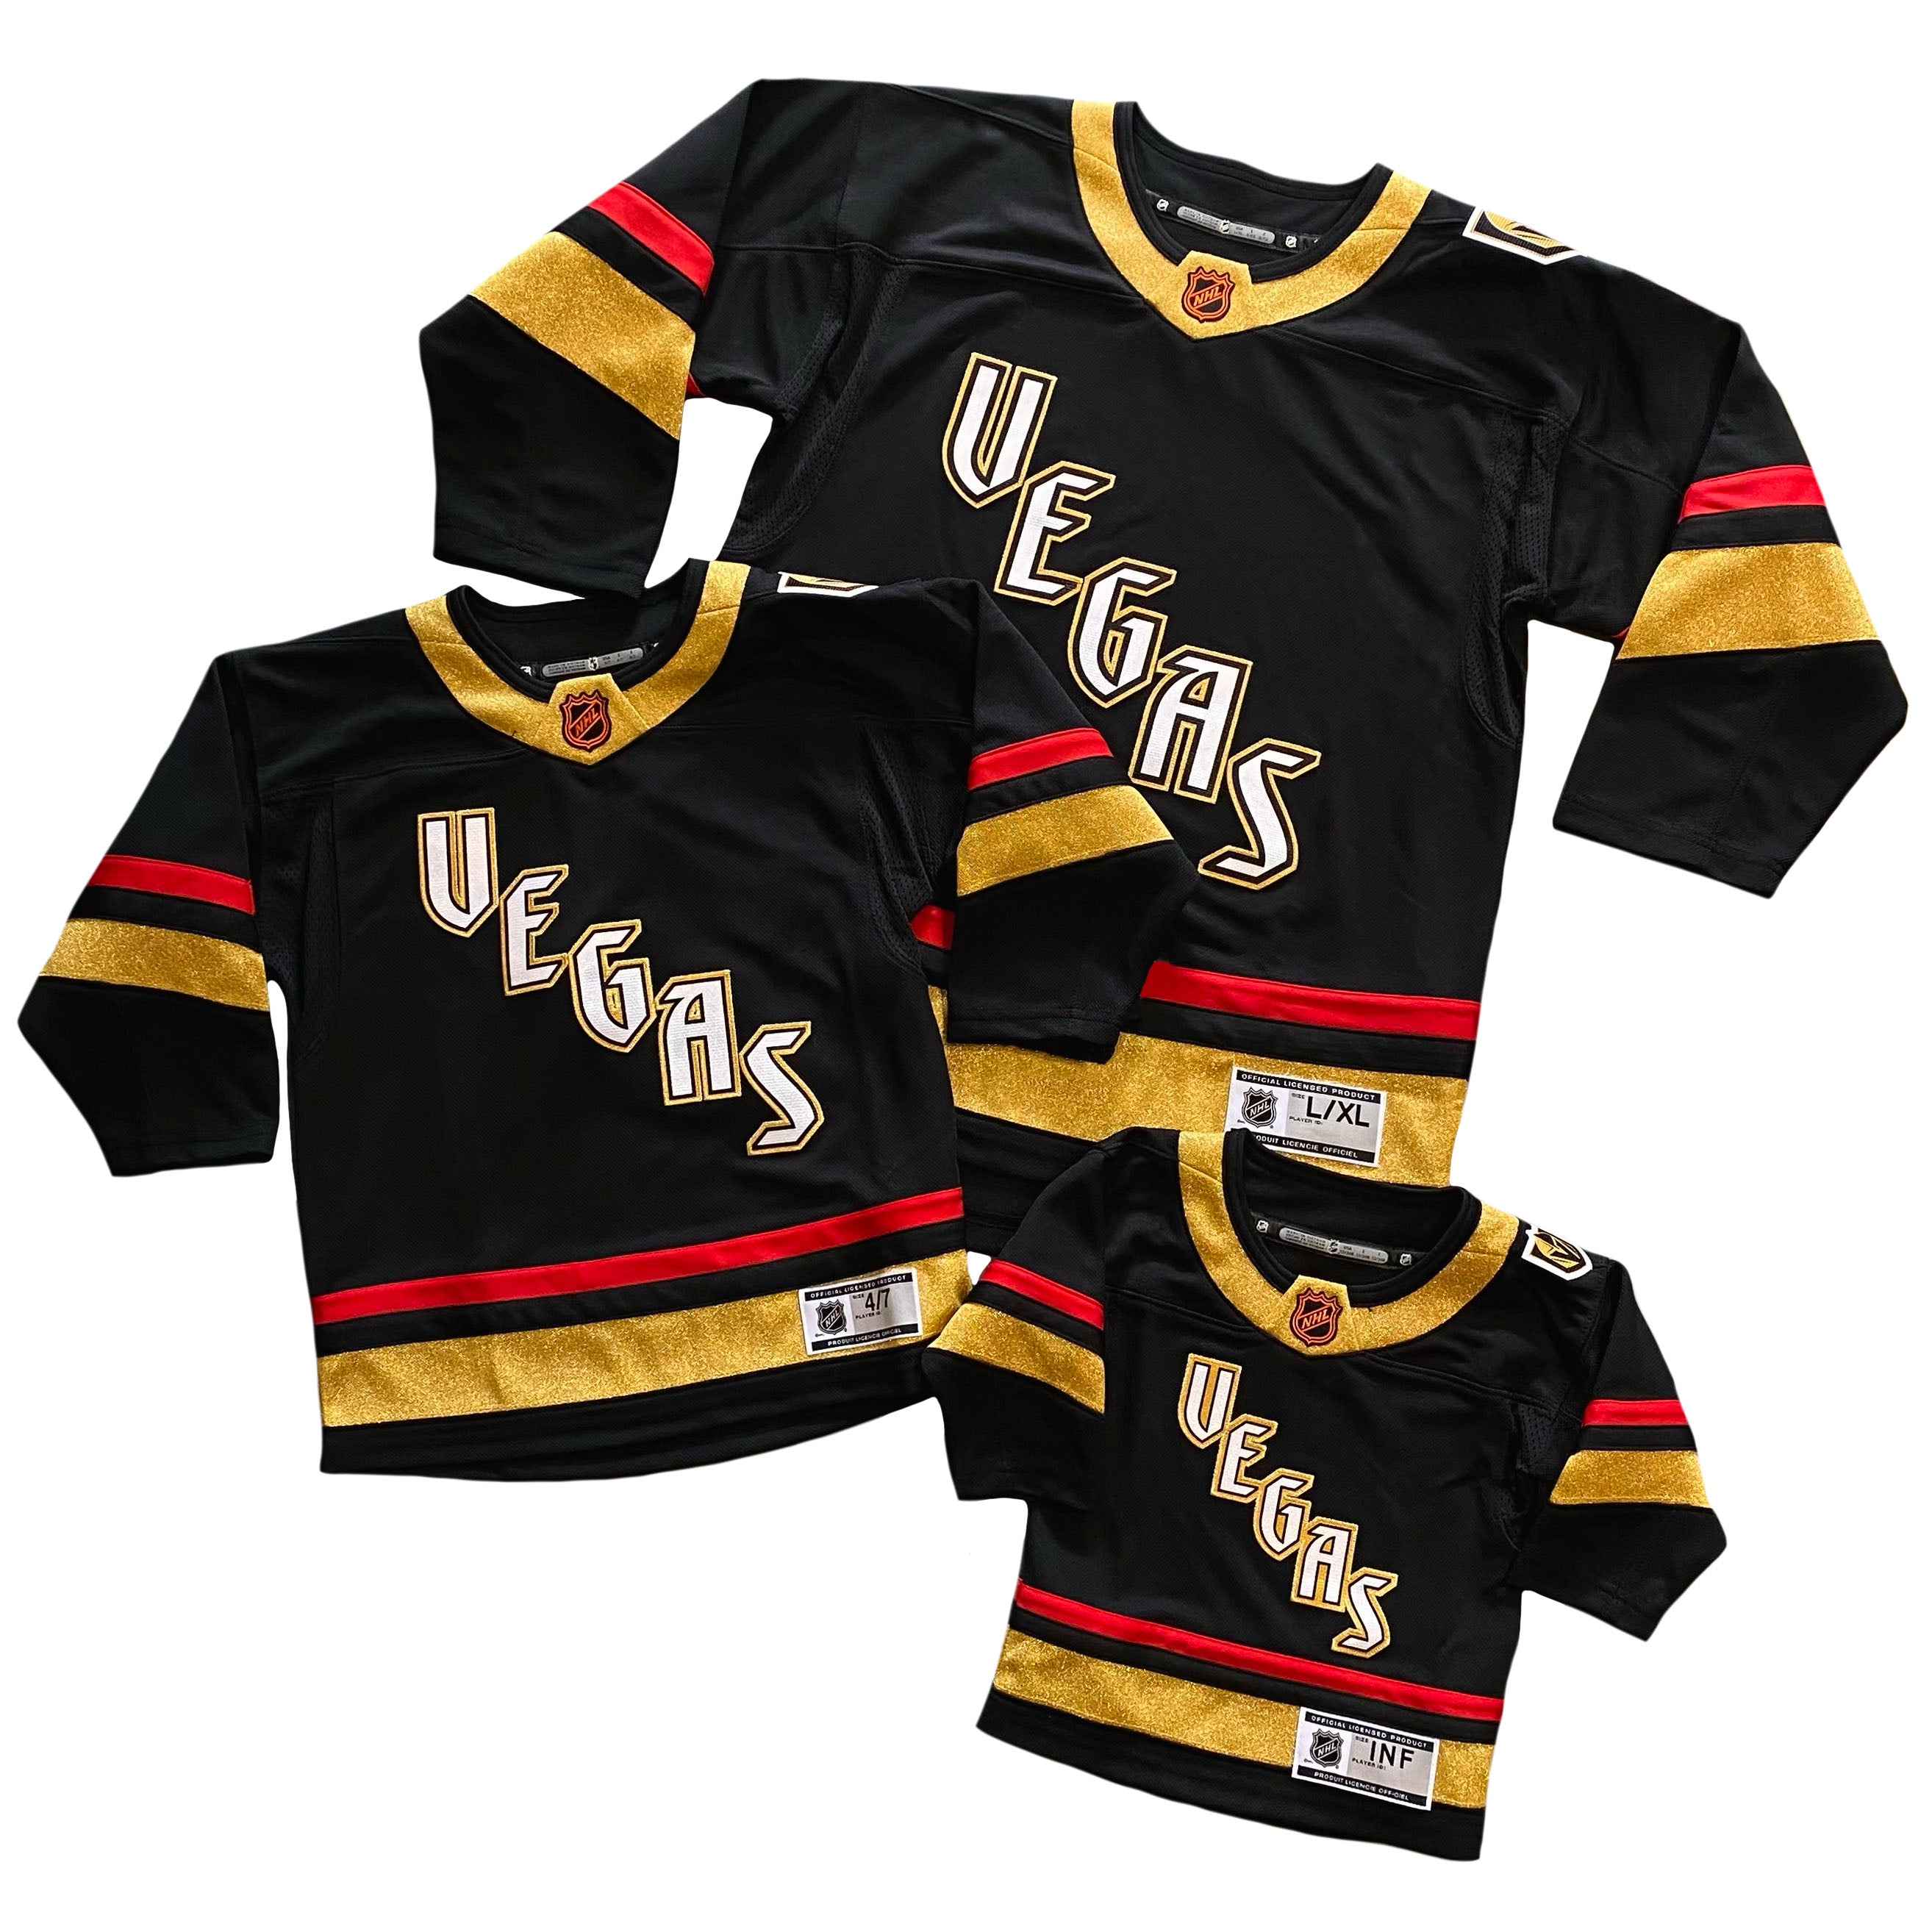 H550B-LAV394B Vegas Golden Knights Blank Hockey Jerseys –